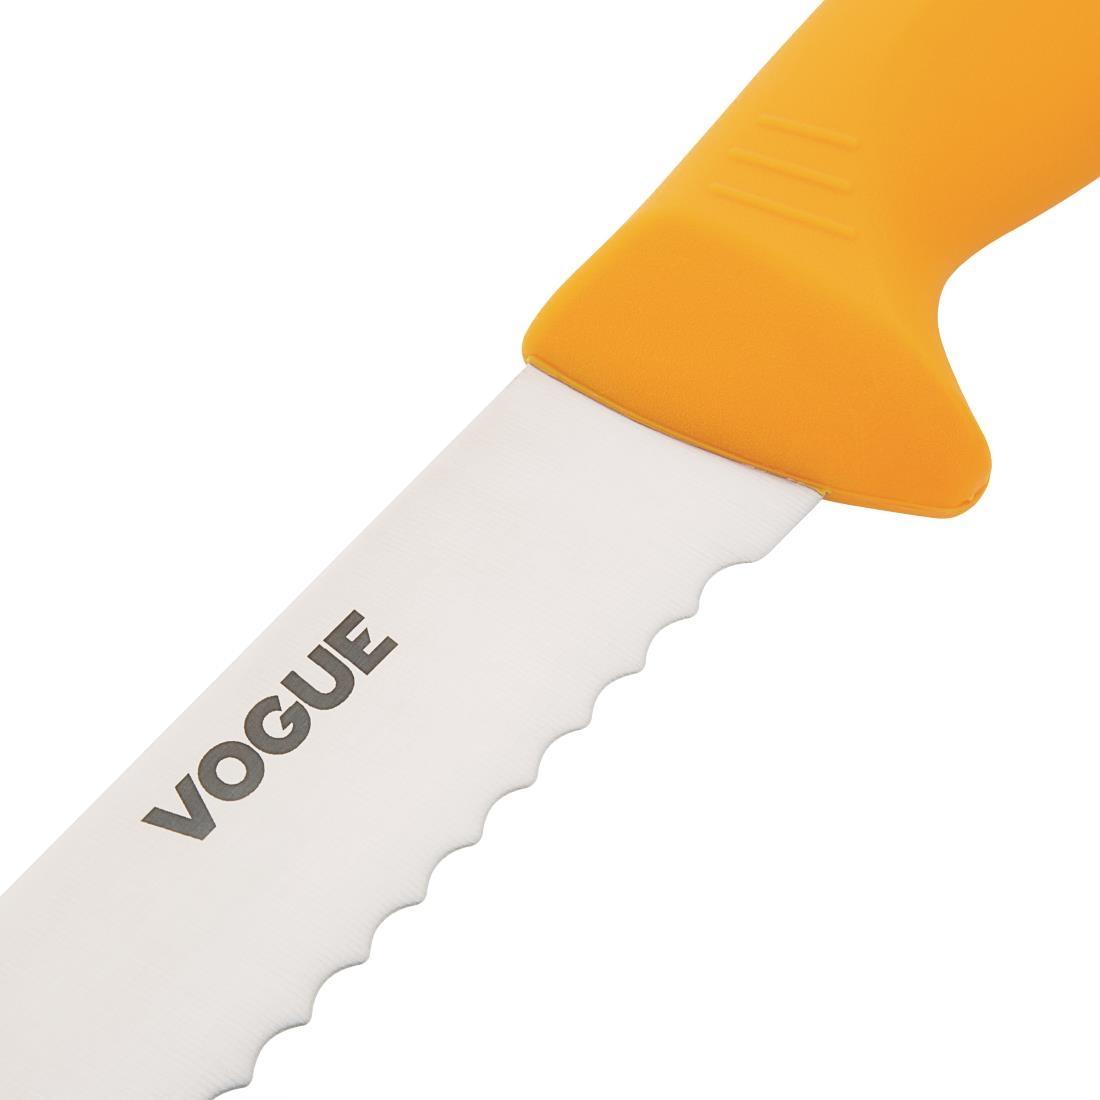 Vogue Soft Grip Pro Serrated Slicer 28cm - GH530  - 7